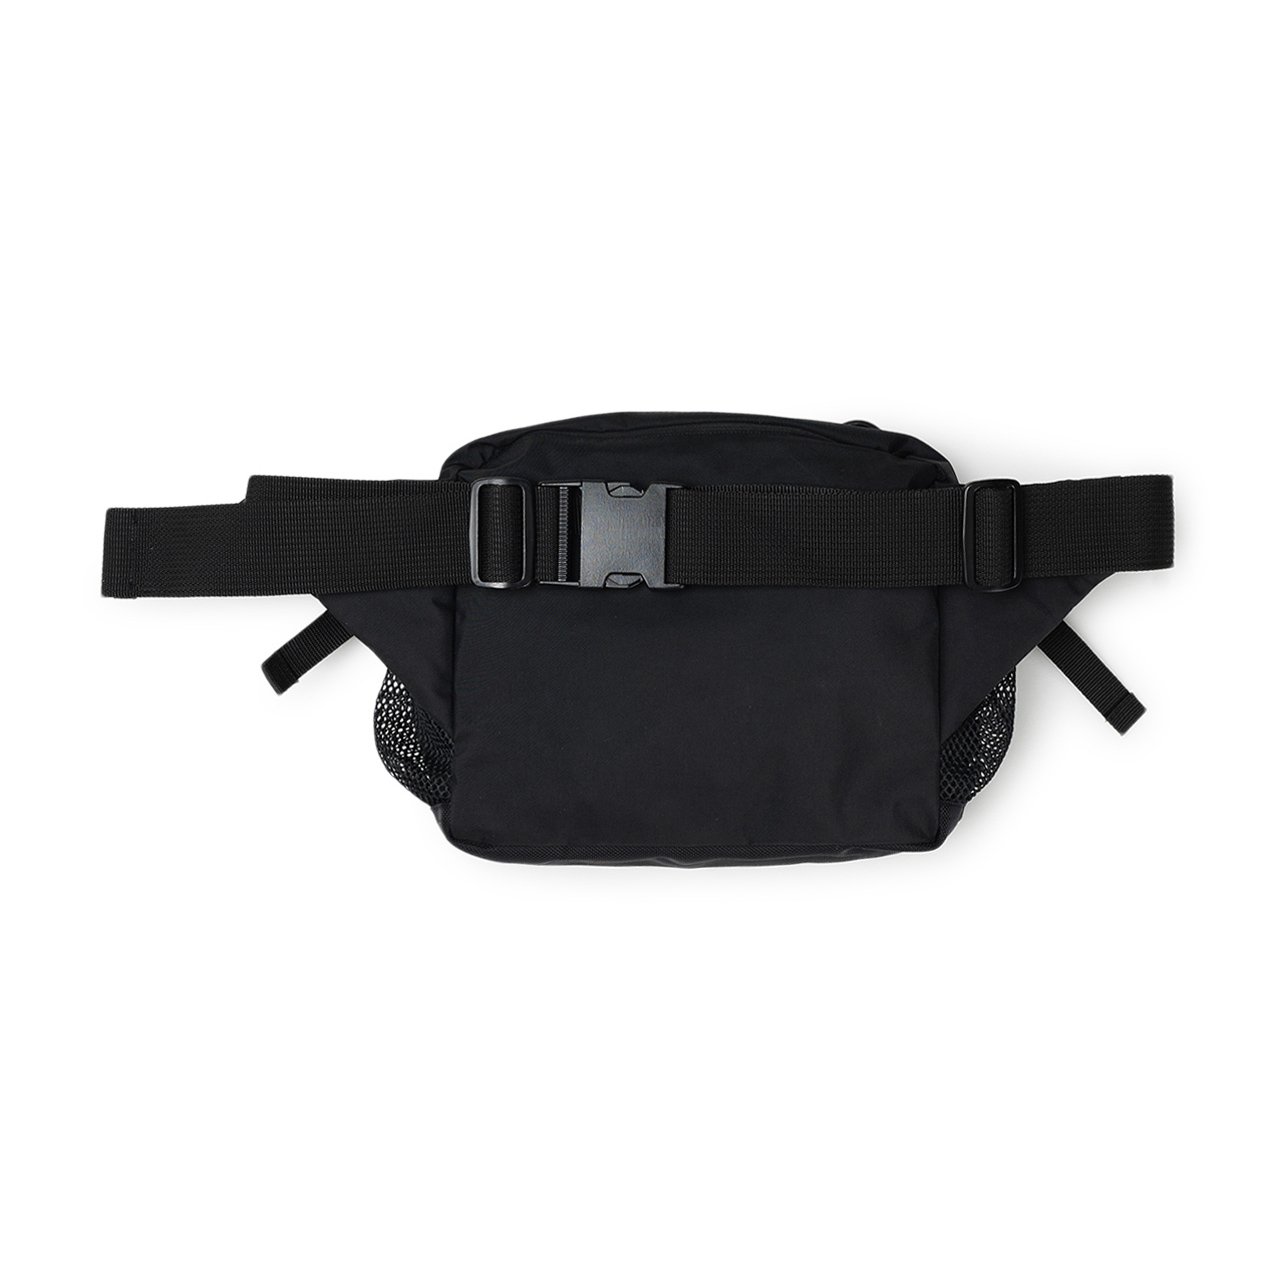 flagstuff body bag (black) - 19ss-fs-70-blk - a.plus - Image - 2